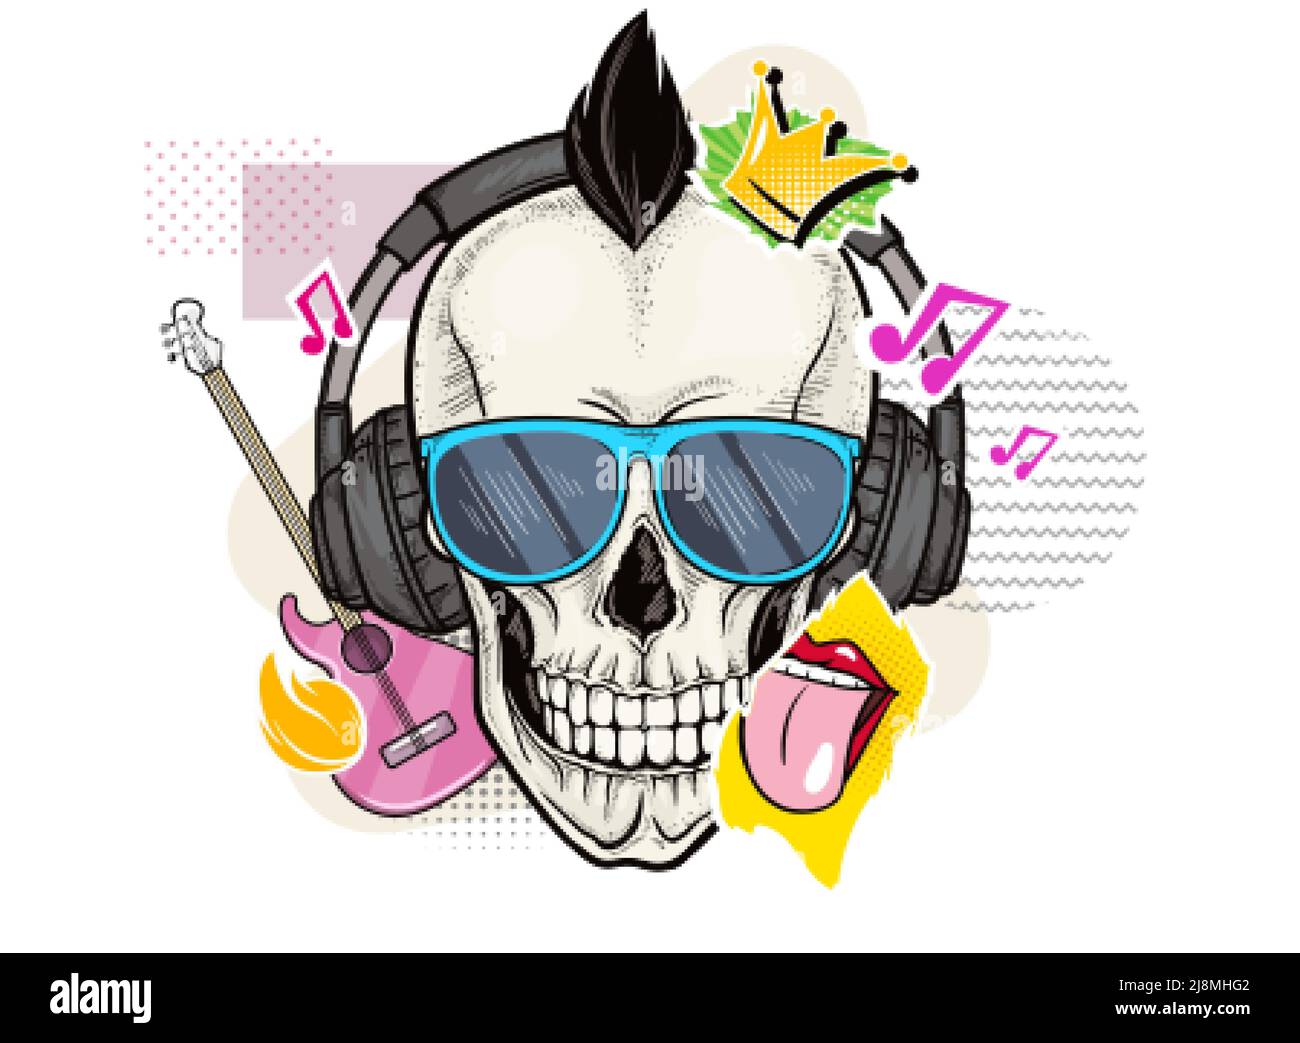 Cranio gotico umano con occhiali da sole, cuffie e adesivi con simbolo di musica rock. Testa a scheletro vettoriale pop art con elementi di chitarra, lingua e collage a corona su sfondo bianco. Illustrazione Vettoriale